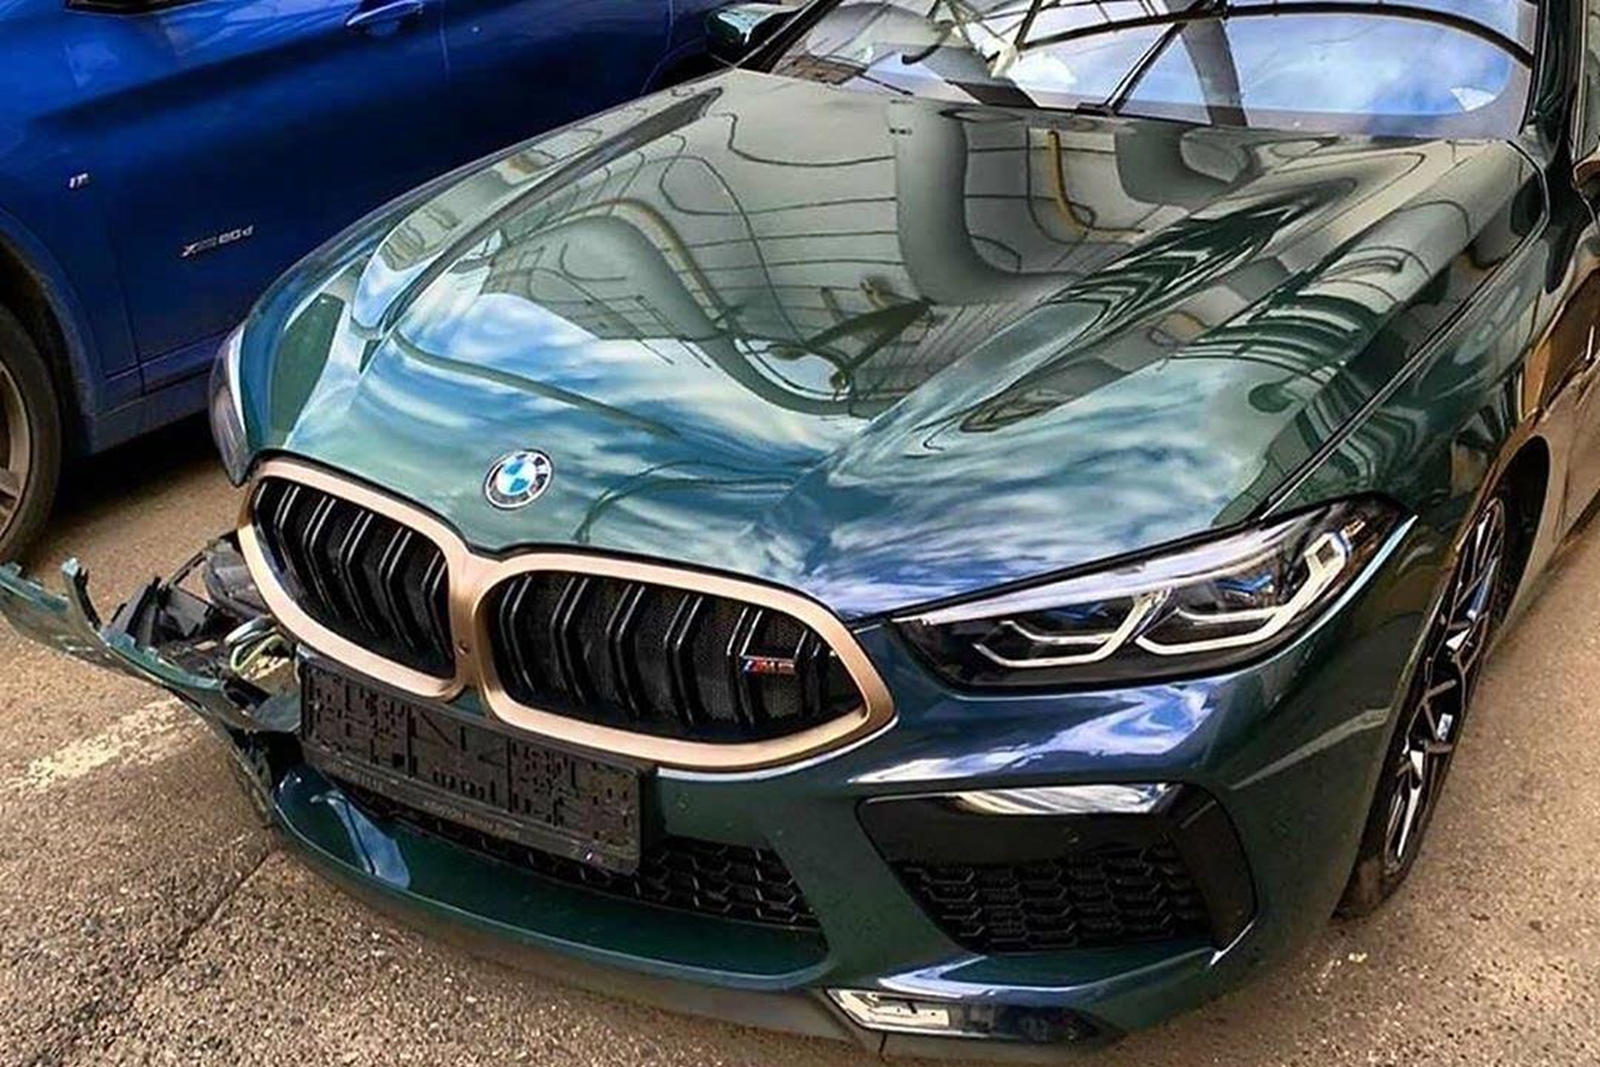 Чтобы отпраздновать начало производства M8 Gran Coupe, BMW выпустил ультра-лимитированную версию First Edition со специальным цветом кузова, вдохновленным оригинальной концепцией M8 Gran Coupe. Всего было запланировано производство 400 экземпляров. Н